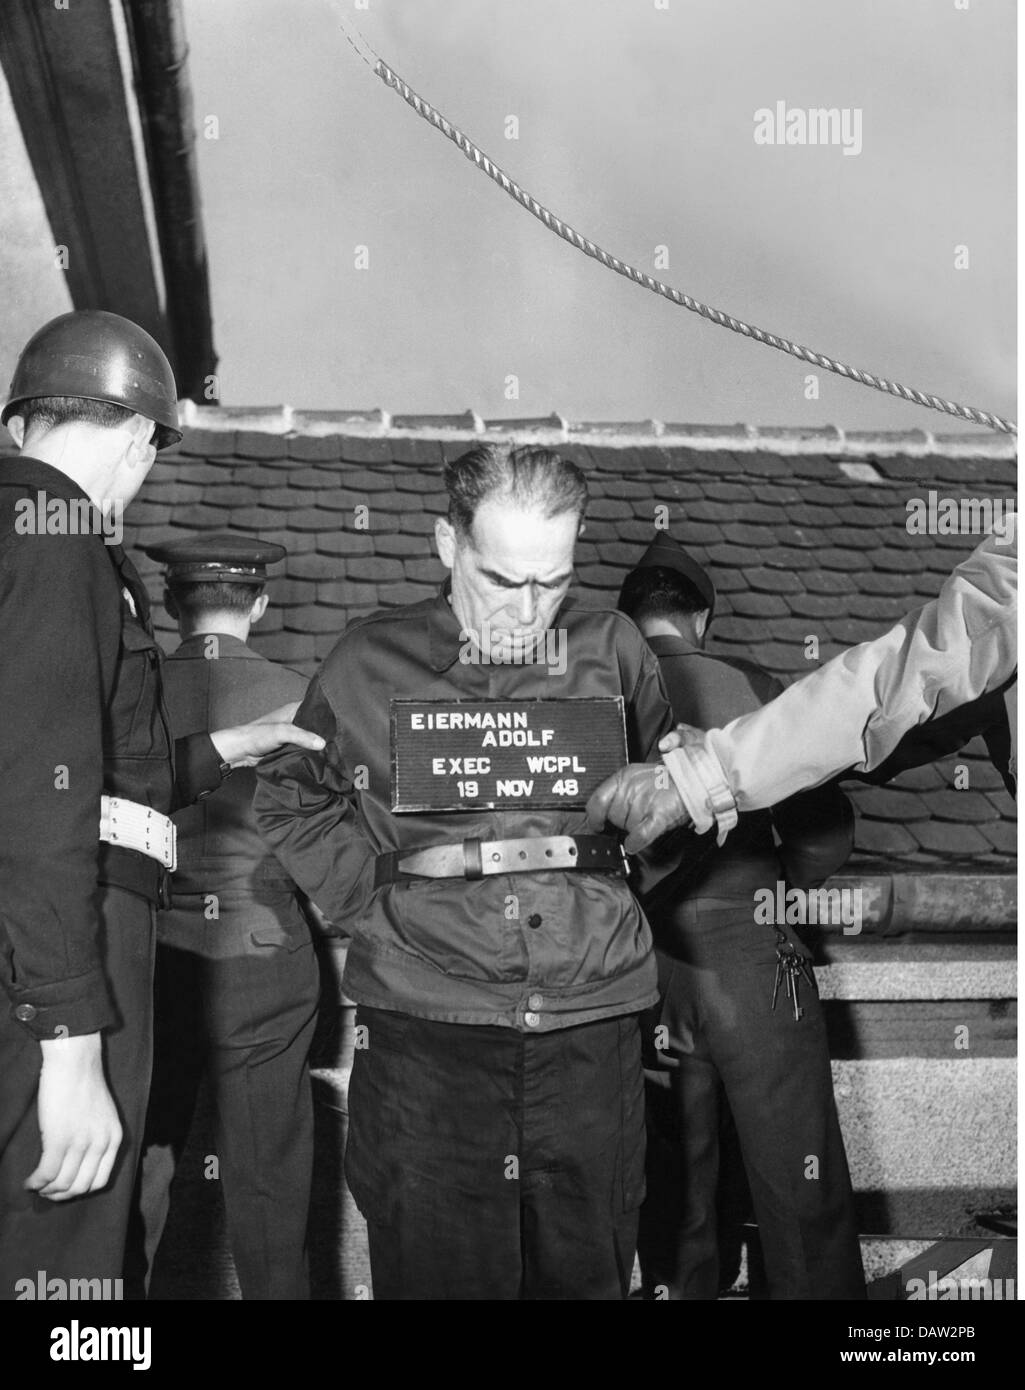 giustizia, sistema penitenziario, impiccagione, esecuzione di Adolf Eiermann, capo del gruppo locale di Weisenbach, per l'assassinio di prigionieri di guerra, Landsberg am Lech, 19.11.1948, diritti aggiuntivi-clearences-non disponibili Foto Stock